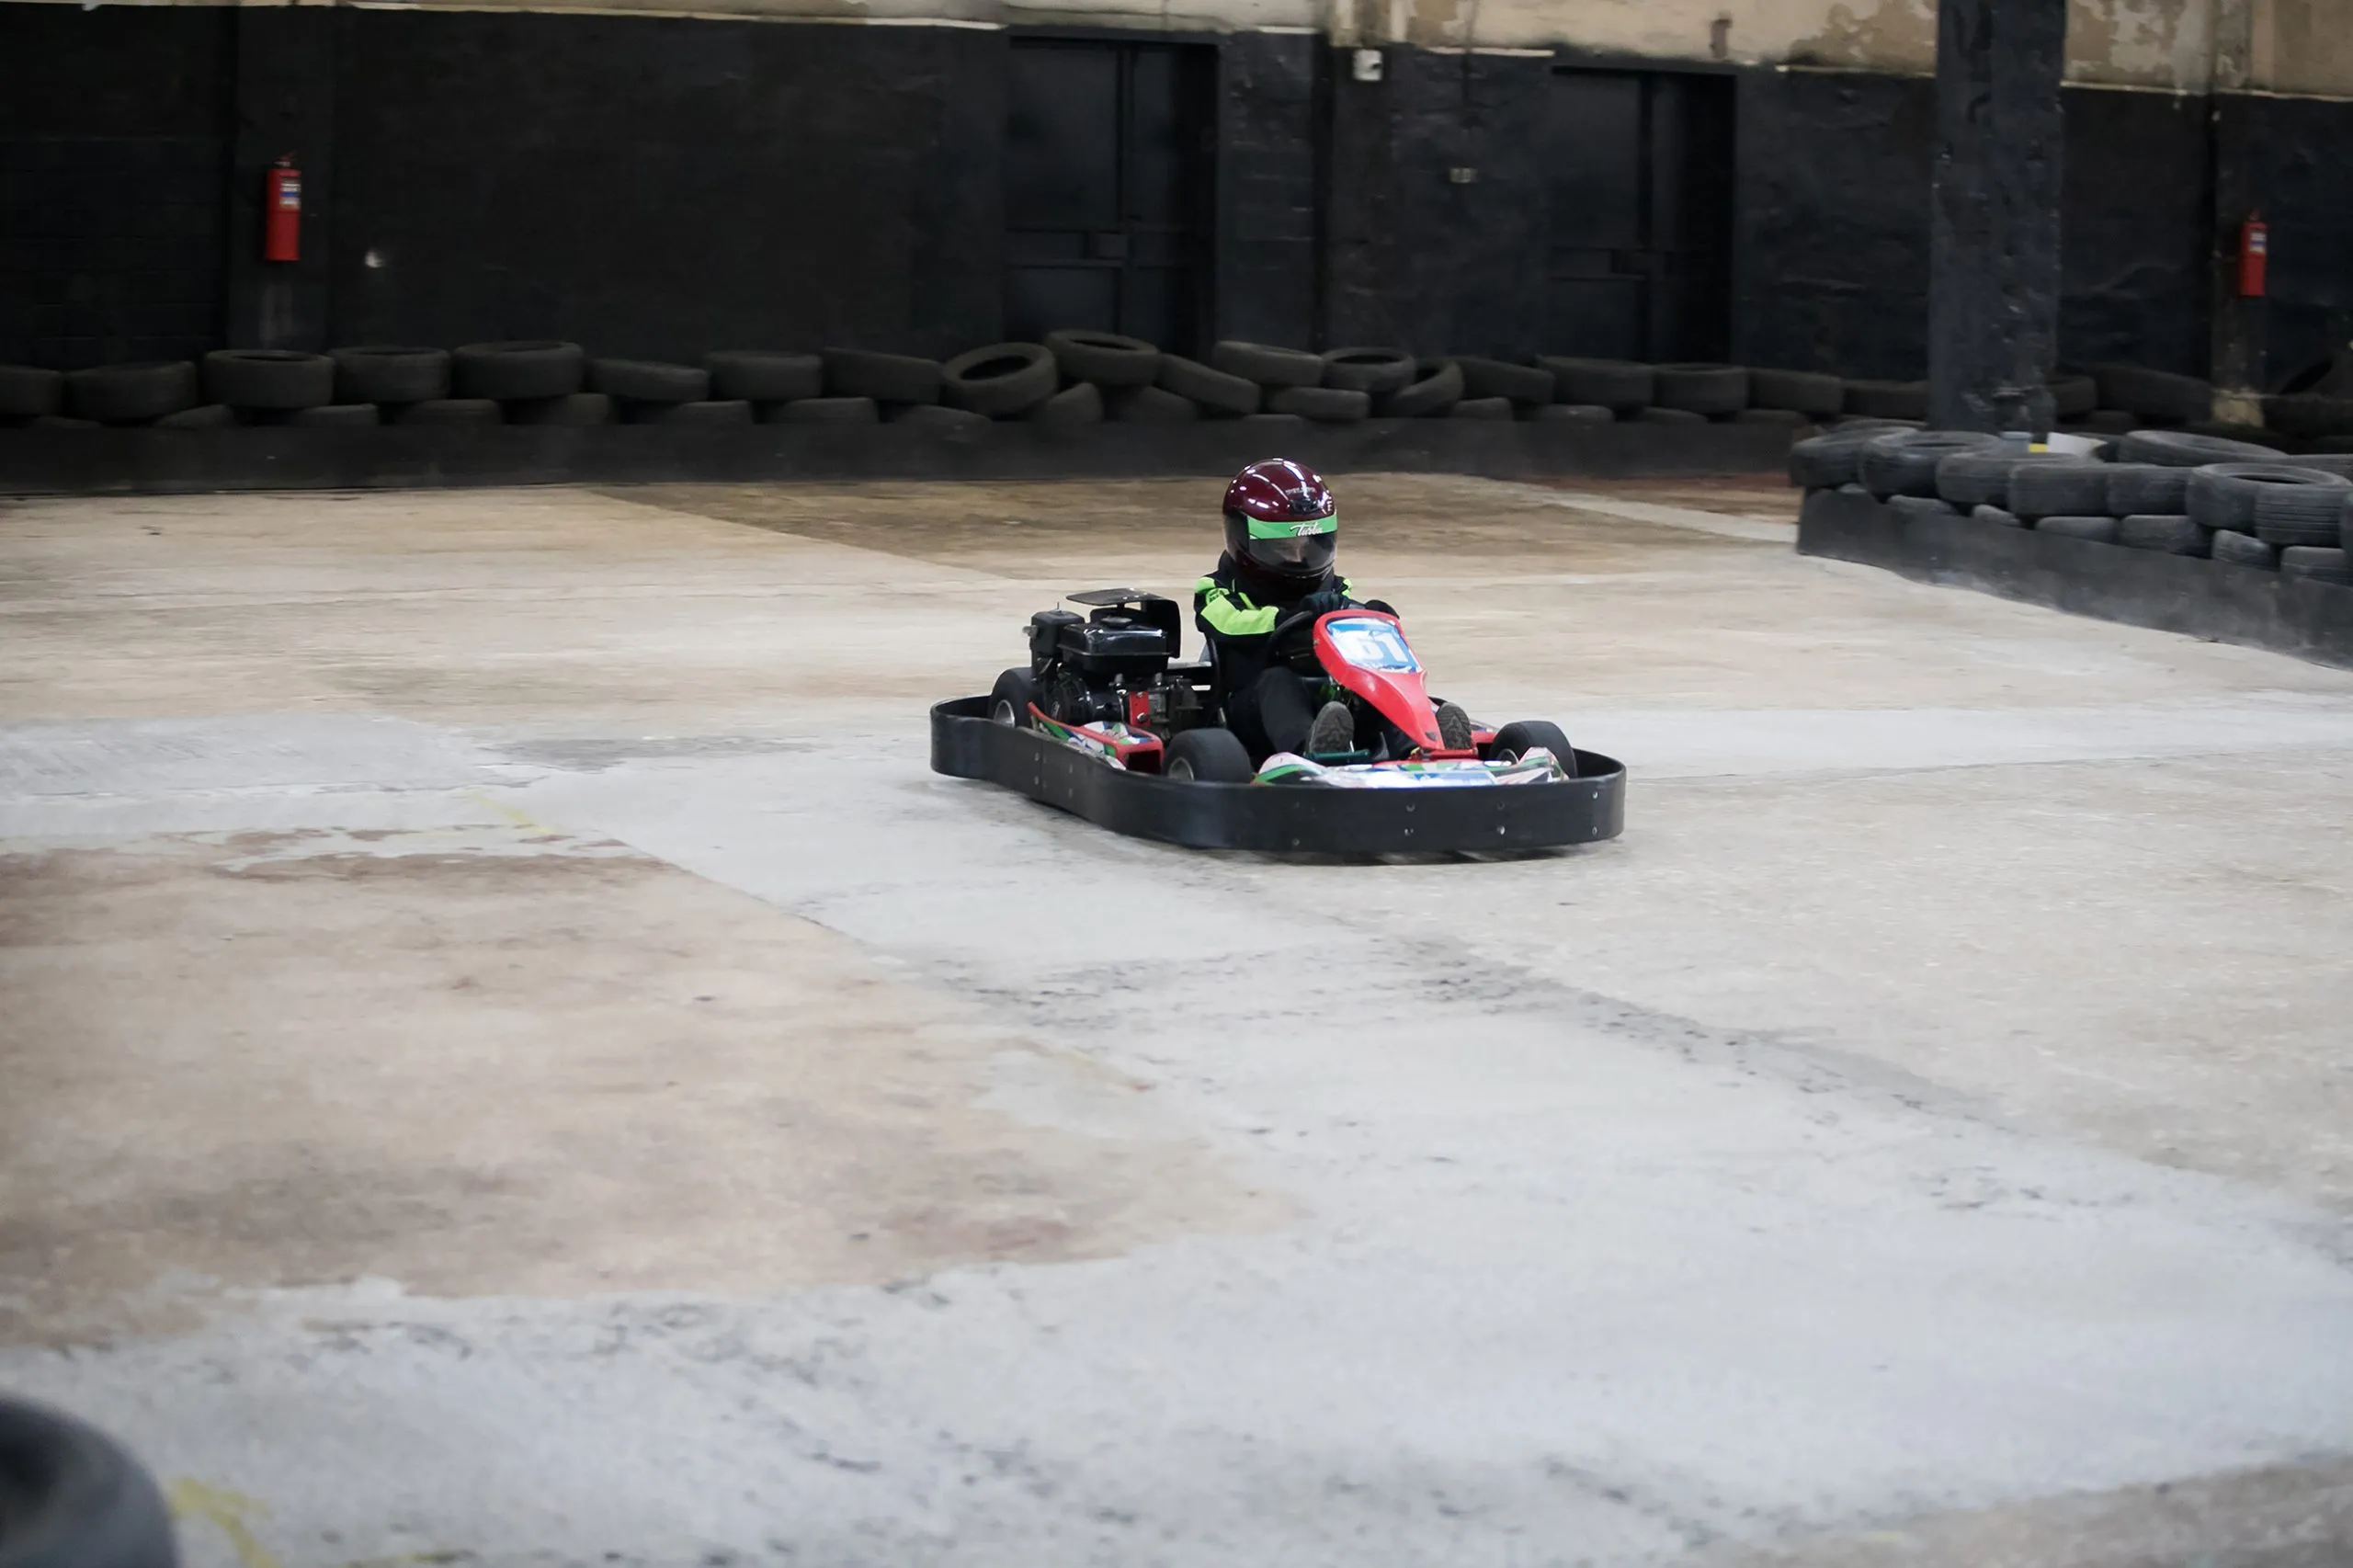 Campeonato de Karting. Conductor en karts con casco, traje de carreras participar en carrera de karts. Espectáculo de karting. Niños y adultos corriendo en karts.